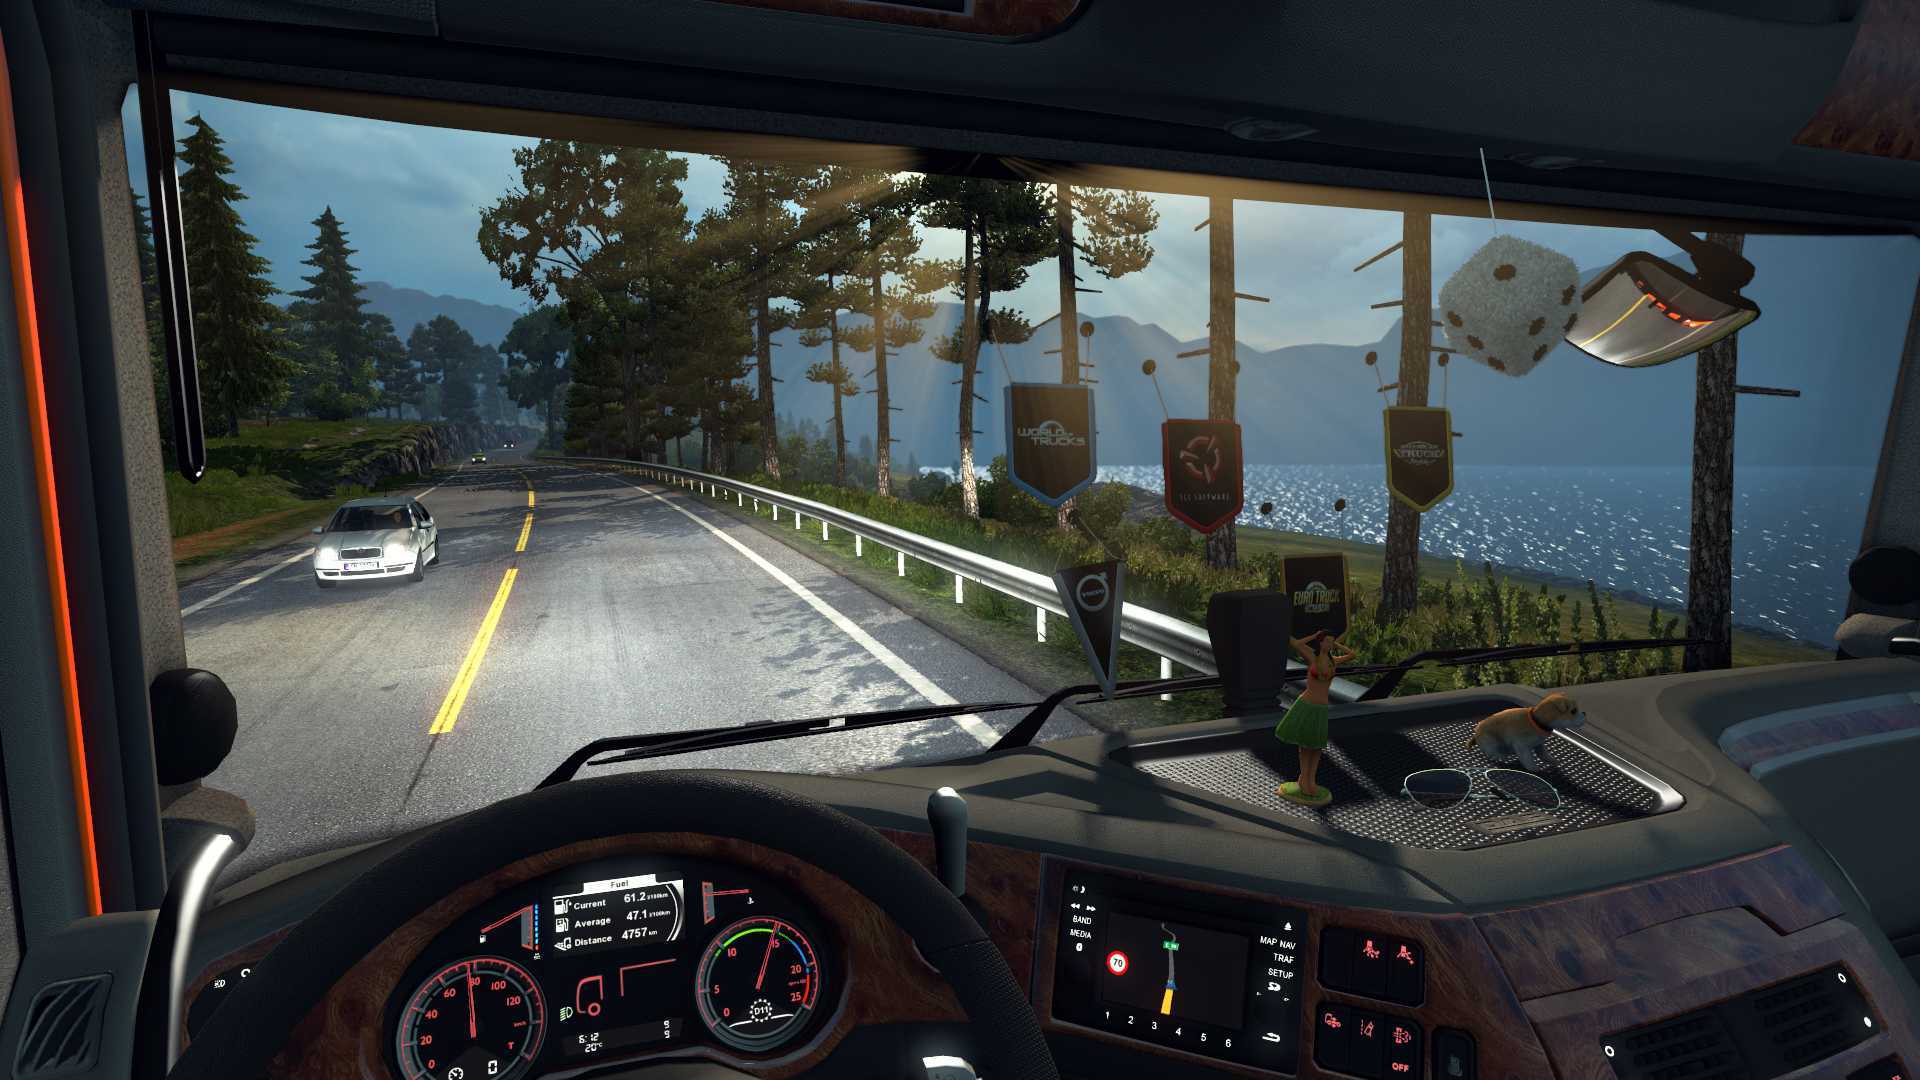 Euro truck simulator 2: где скачать игру, где найти сохранения, системные требования, язык